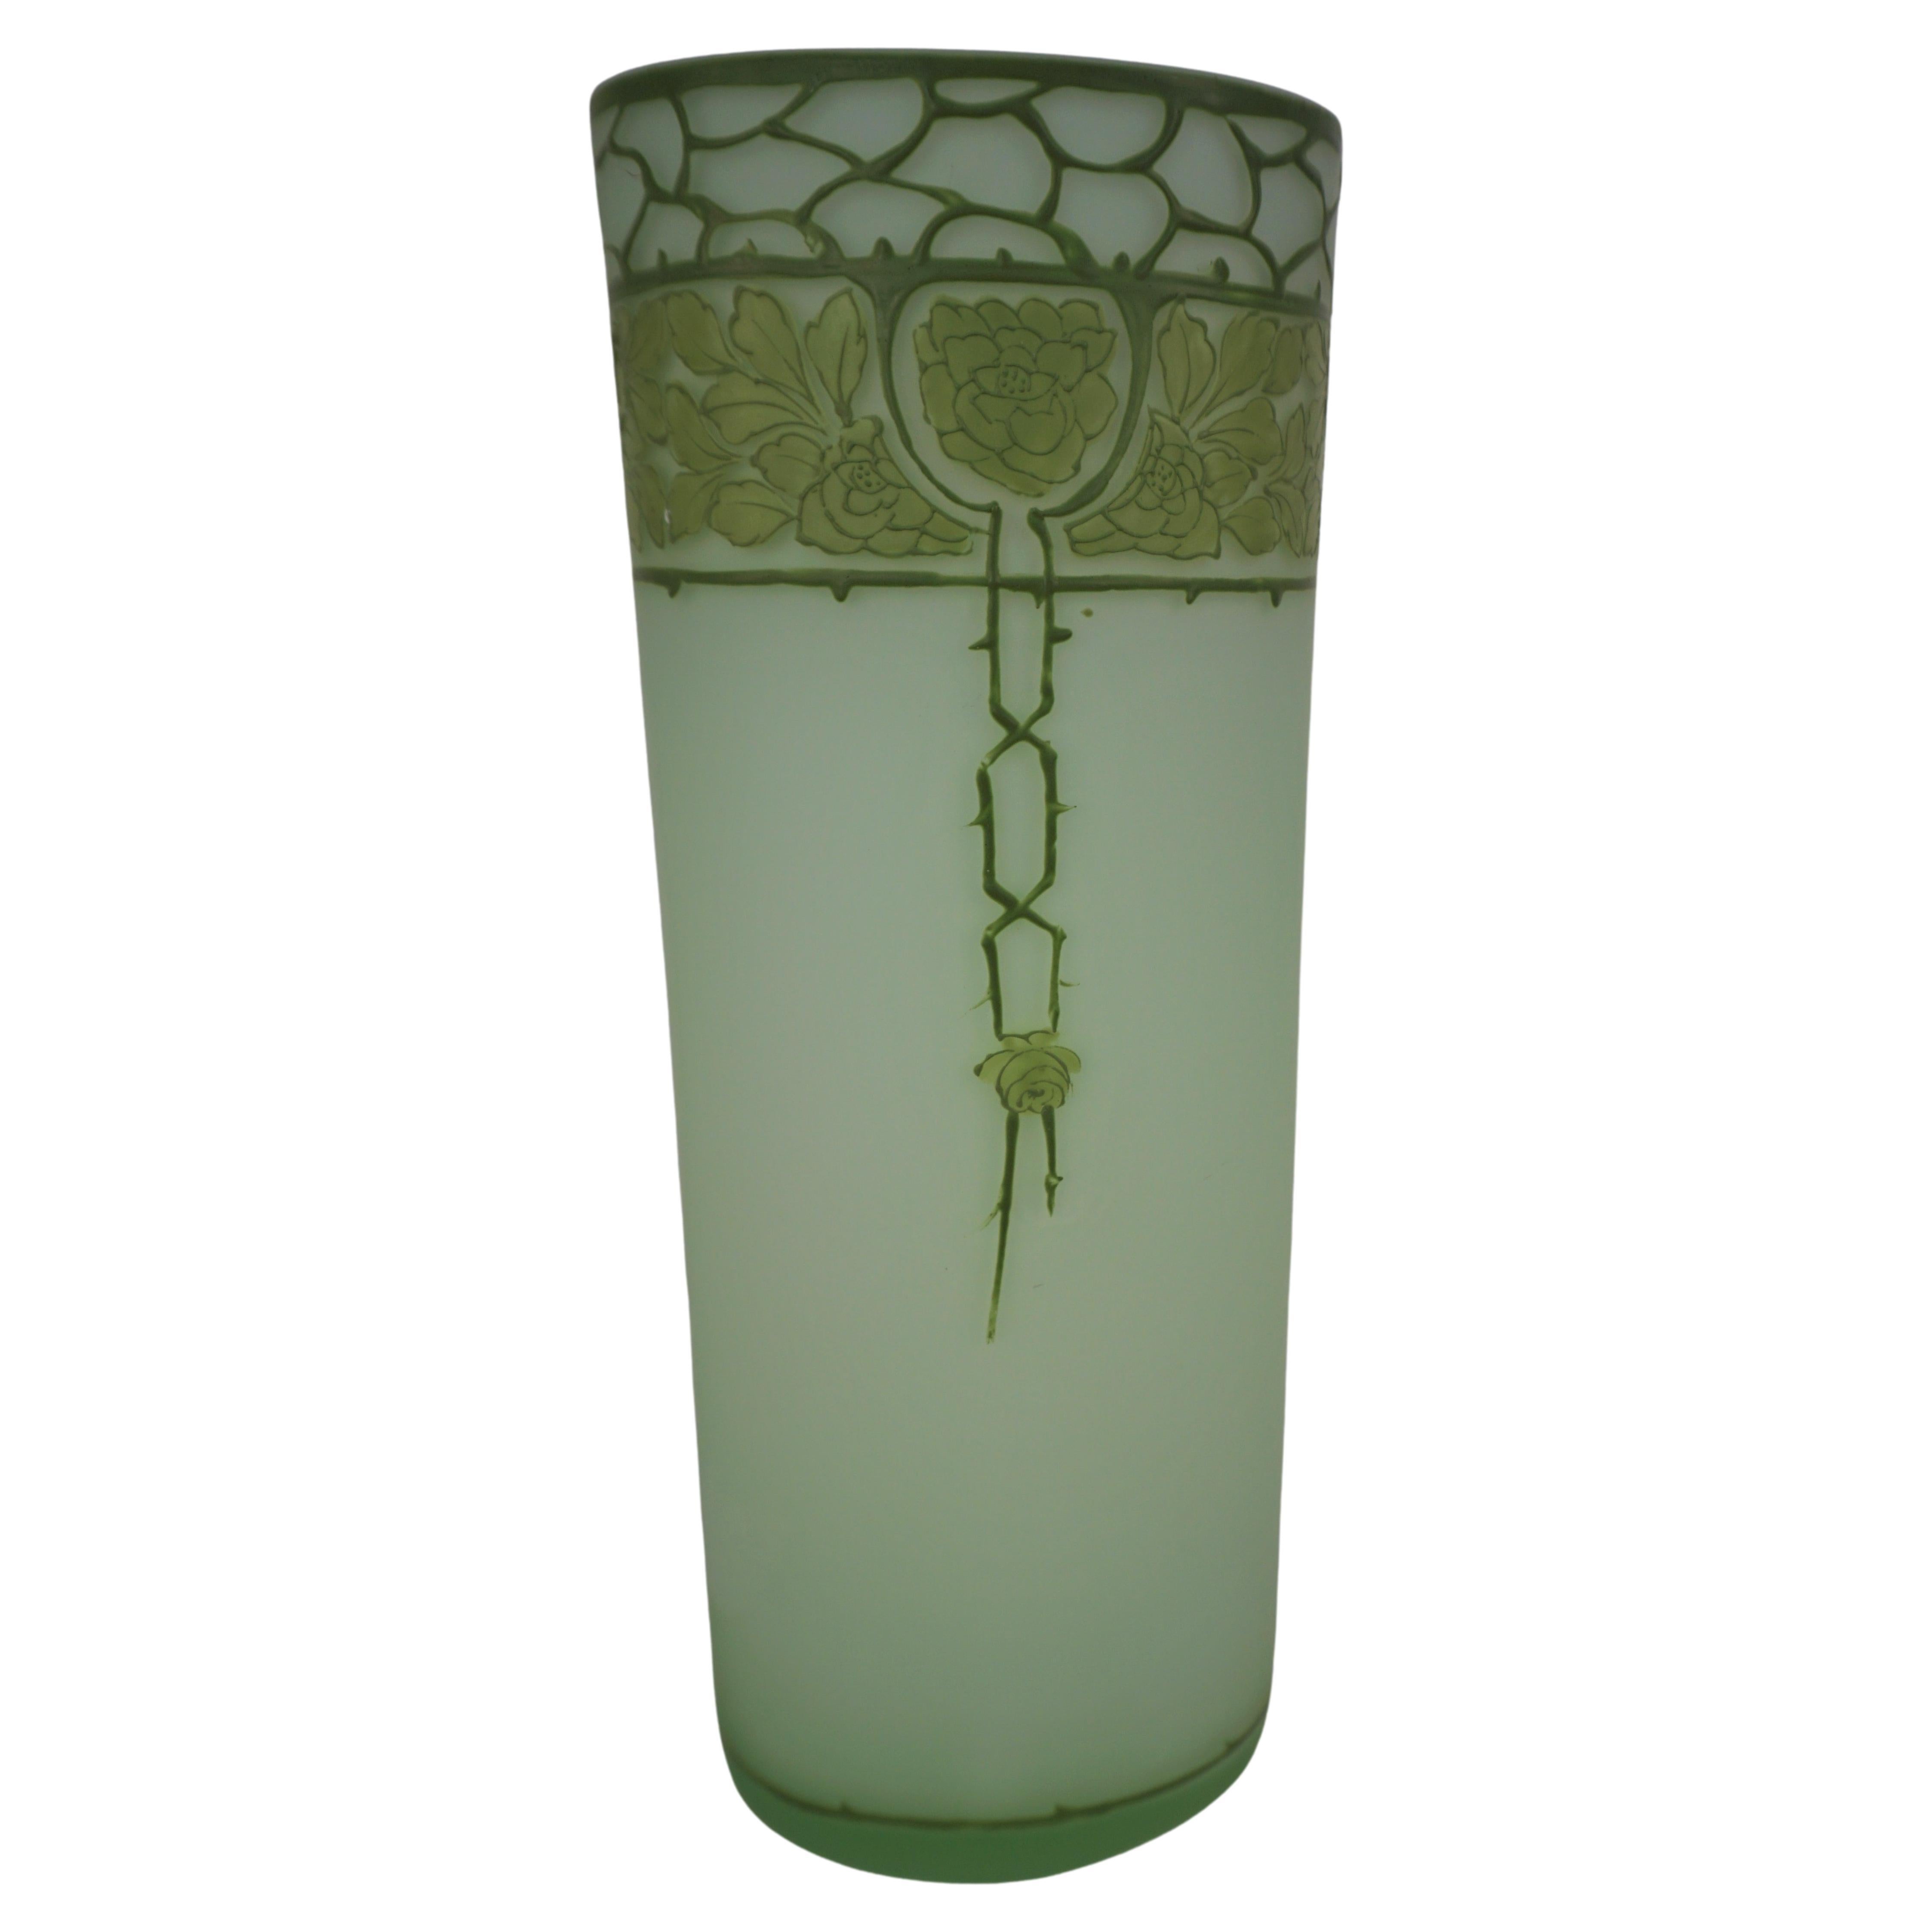  Art Nouveau  Jugendstil cameo glass vase